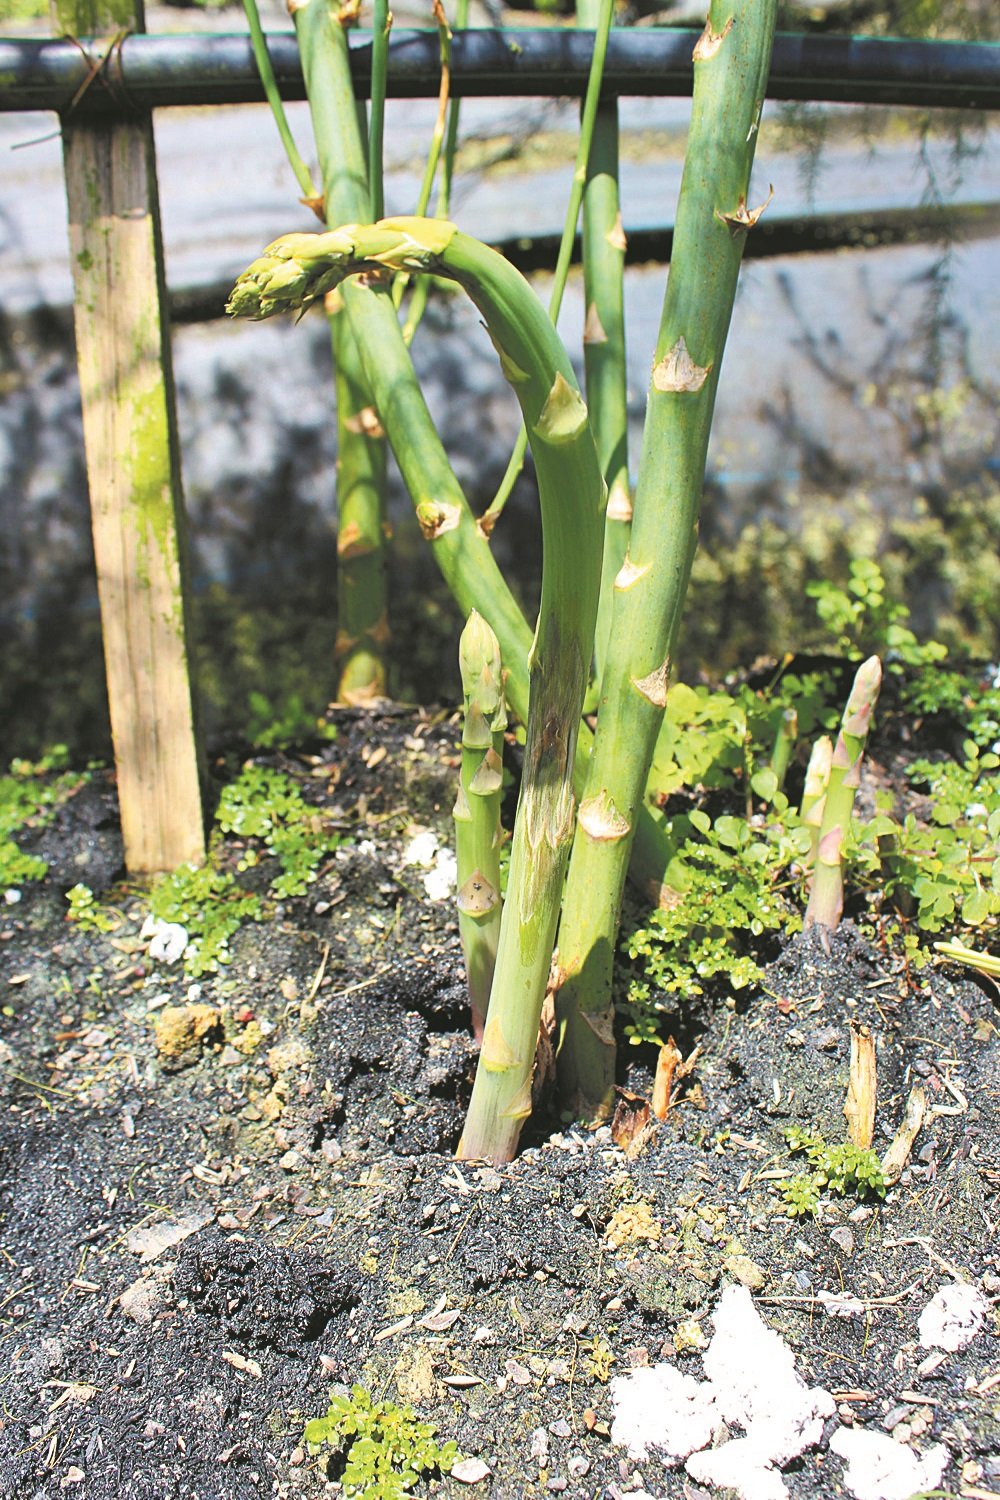 相信是因气温的问题， 好些芦笋幼芽在生长时，顶端会有所扭曲，影响卖相及价格。